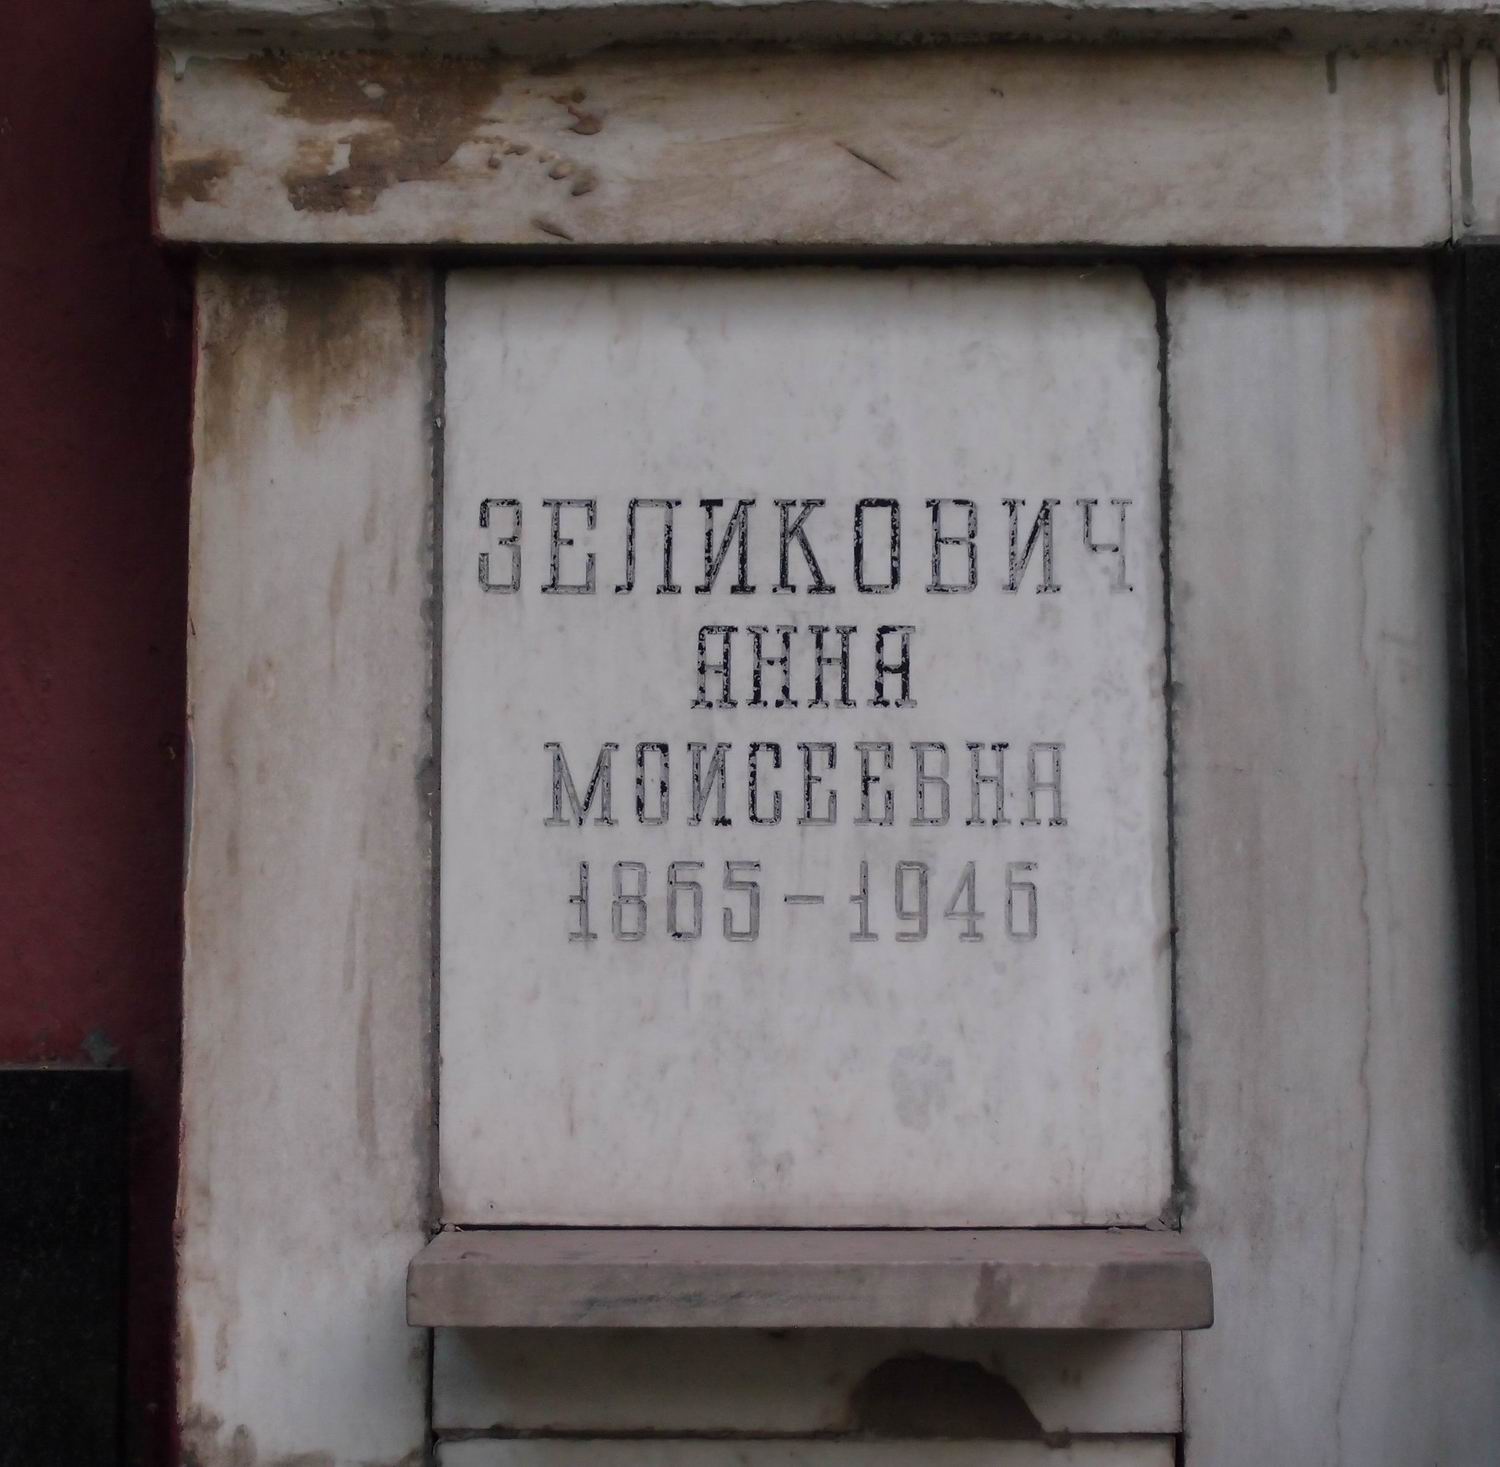 Плита на нише Зеликович А.М. (1865-1946), на Новодевичьем кладбище (колумбарий [91]-1-1).